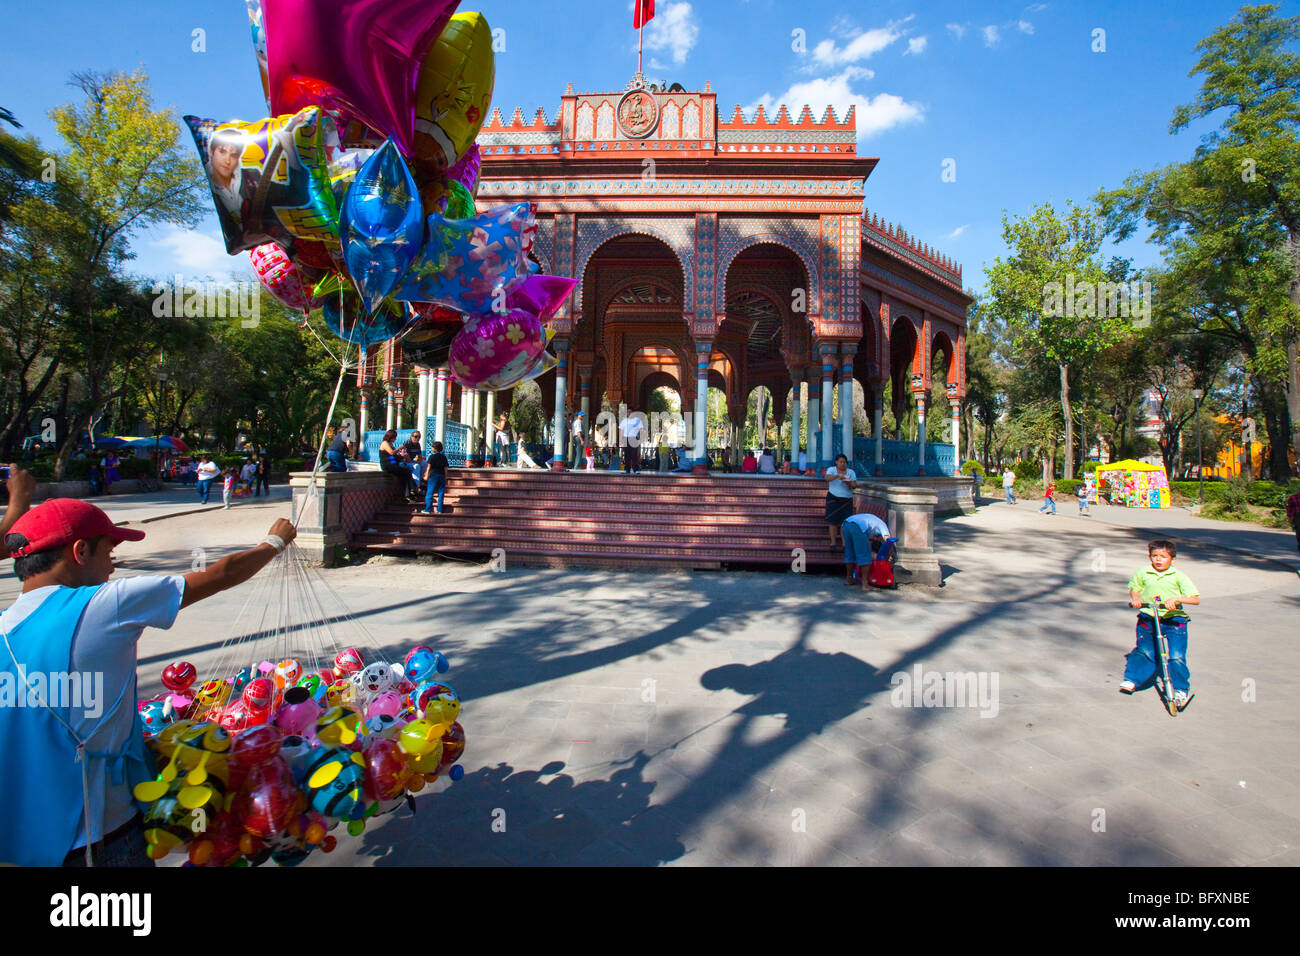 Kiosco Morisco or the Moorish Kiosk in Santa Maria la Ribera neighborhood of Mexico City Stock Photo